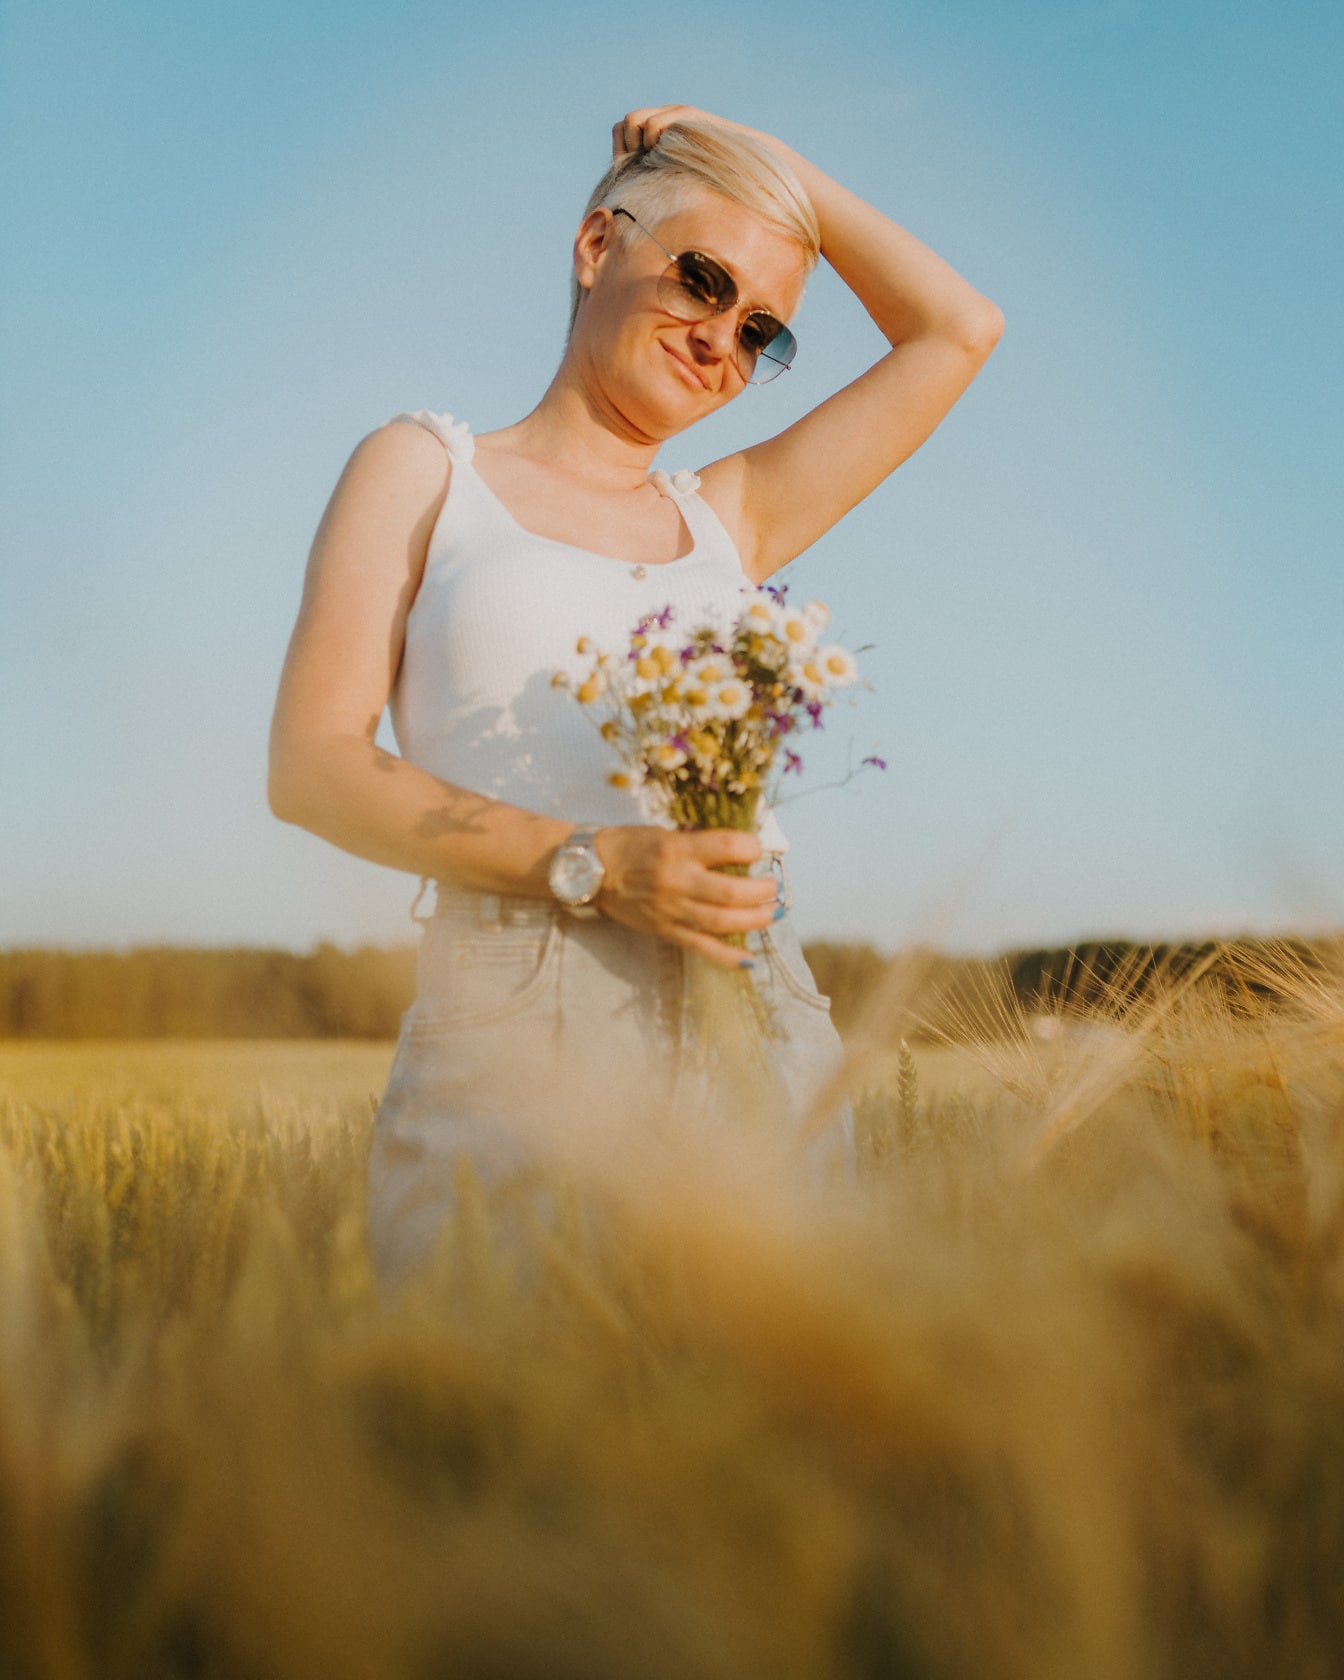 Wspaniała kobieta w białej koszuli z kwiatami pozuje na polu pszenicy